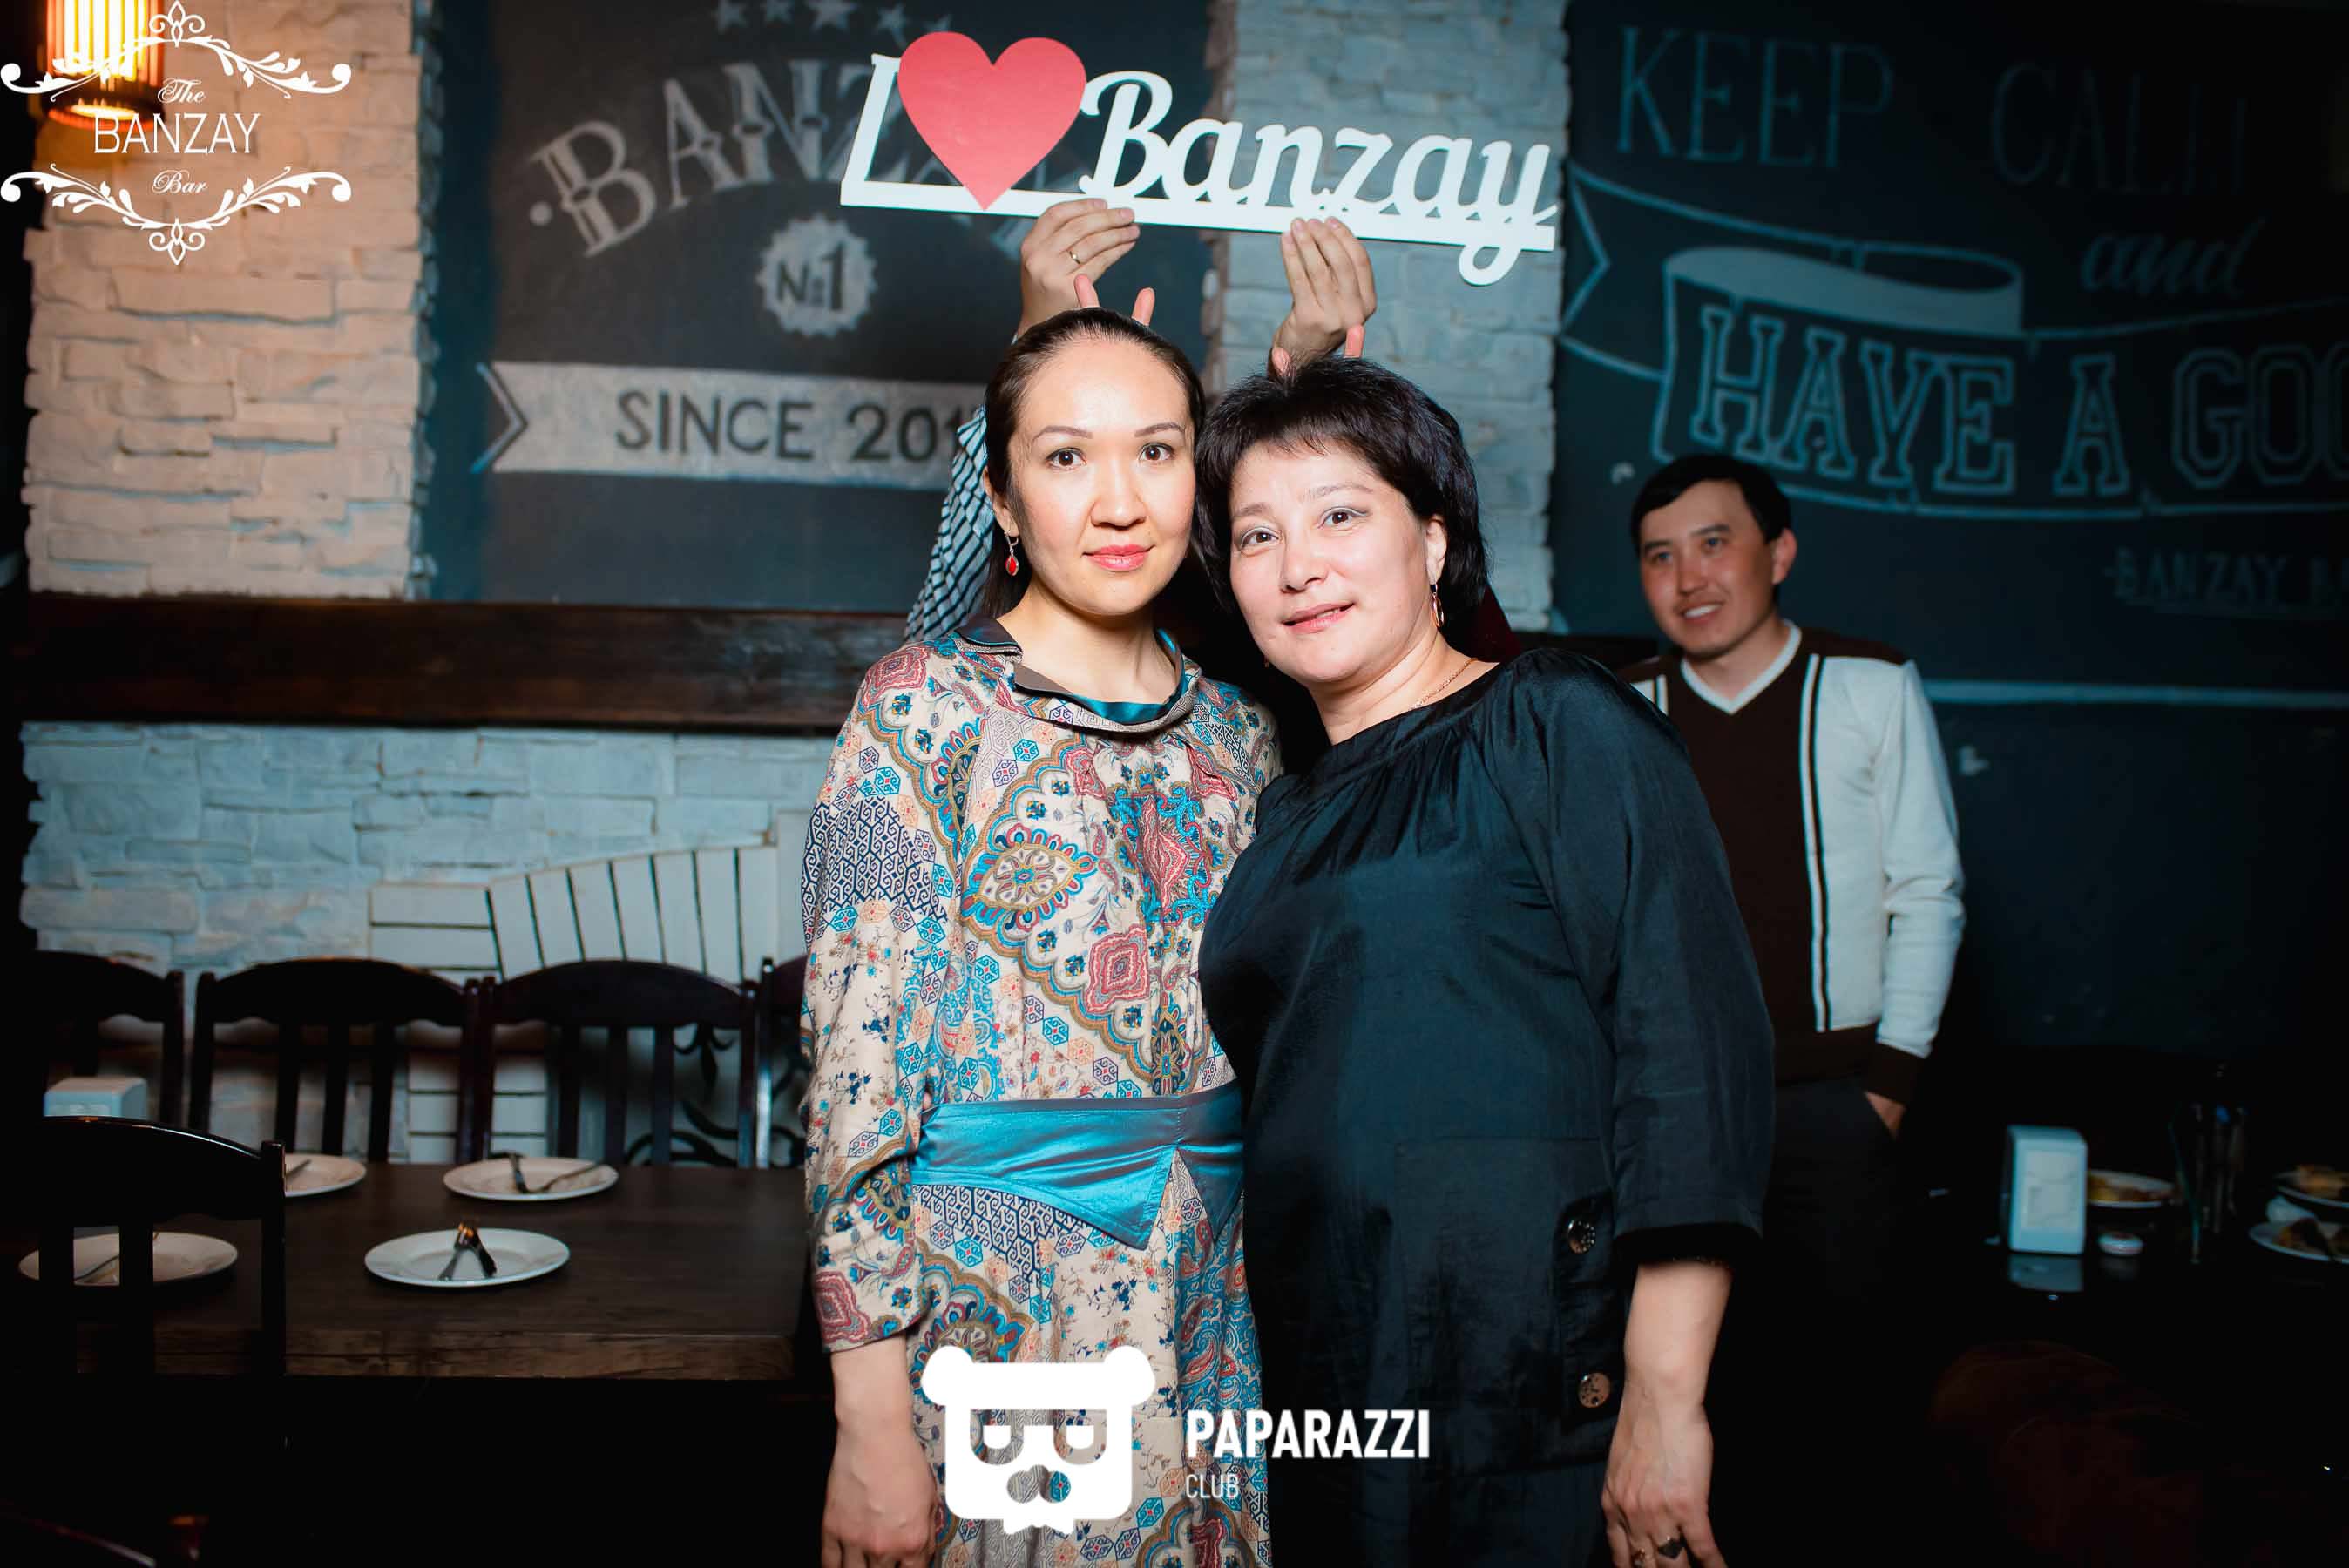 The Banzay Bar на Жирентаева